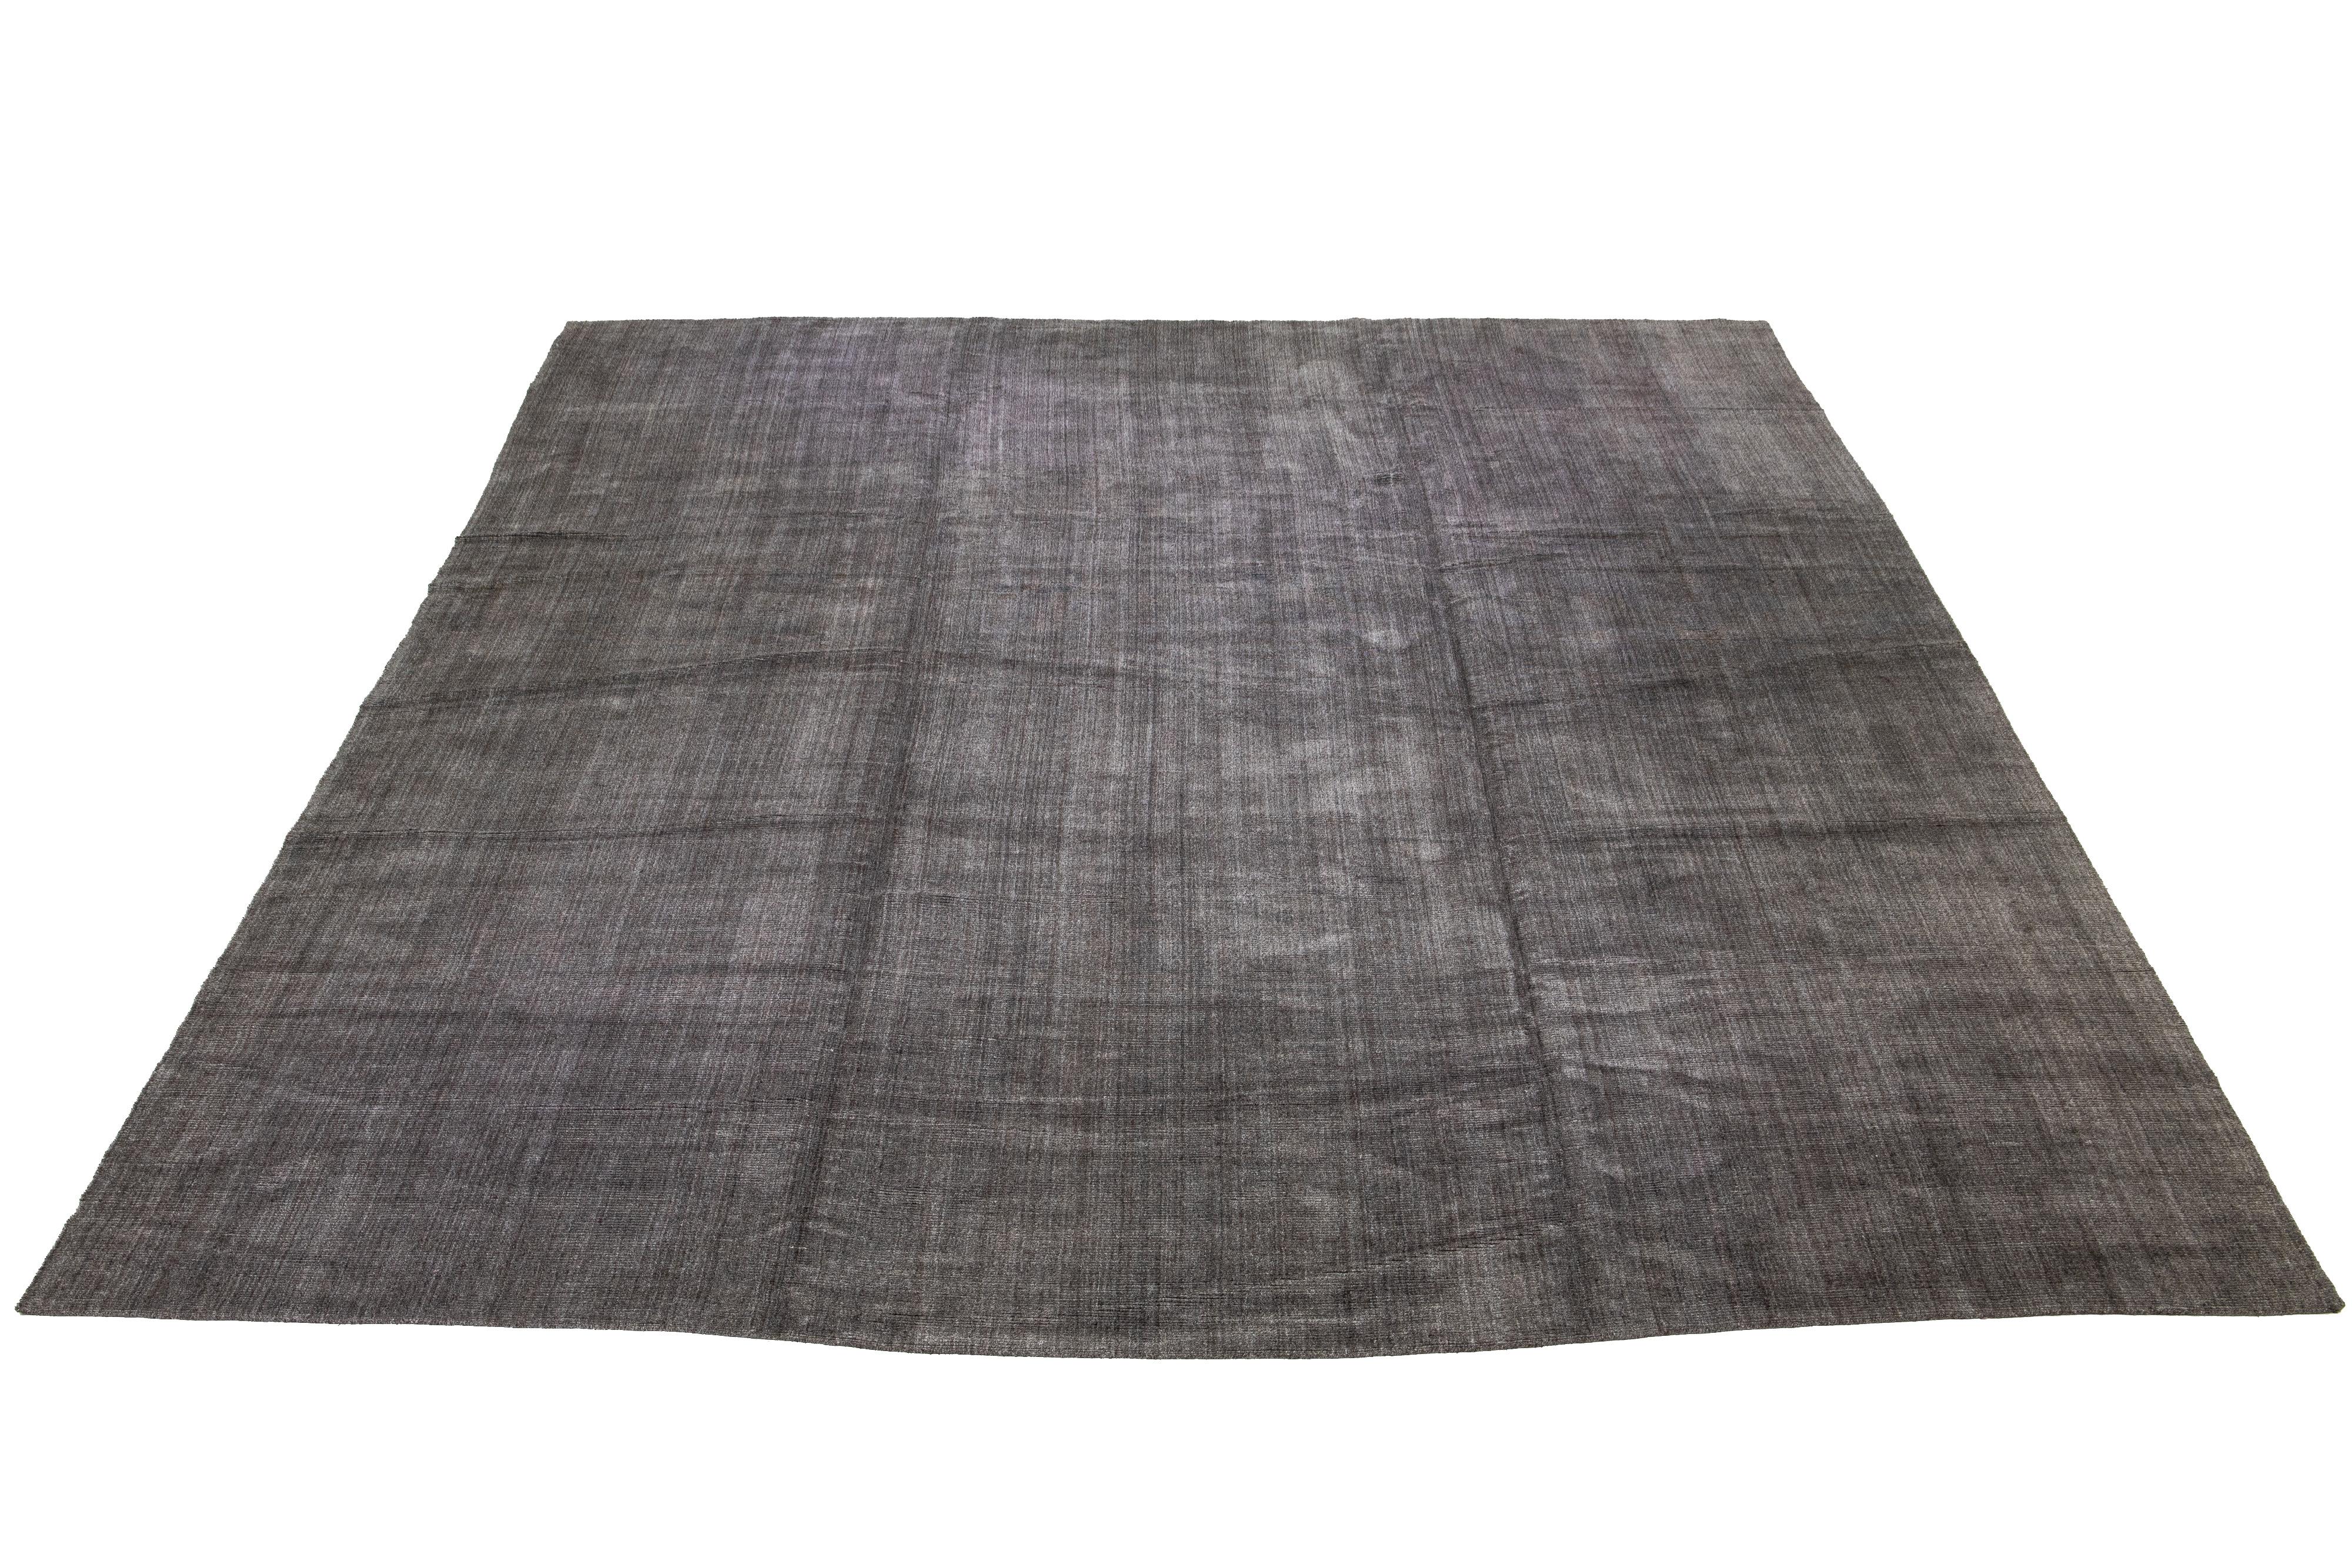 Wunderschöner, übergroßer, handgefertigter Teppich aus Indien mit einer Kombination aus Bambus-, Seiden- und Wollmaterialien und einem herrlichen grauen Feld. Dieser Teppich besticht durch sein unifarbenes All-Over-Muster.

Dieser Teppich misst